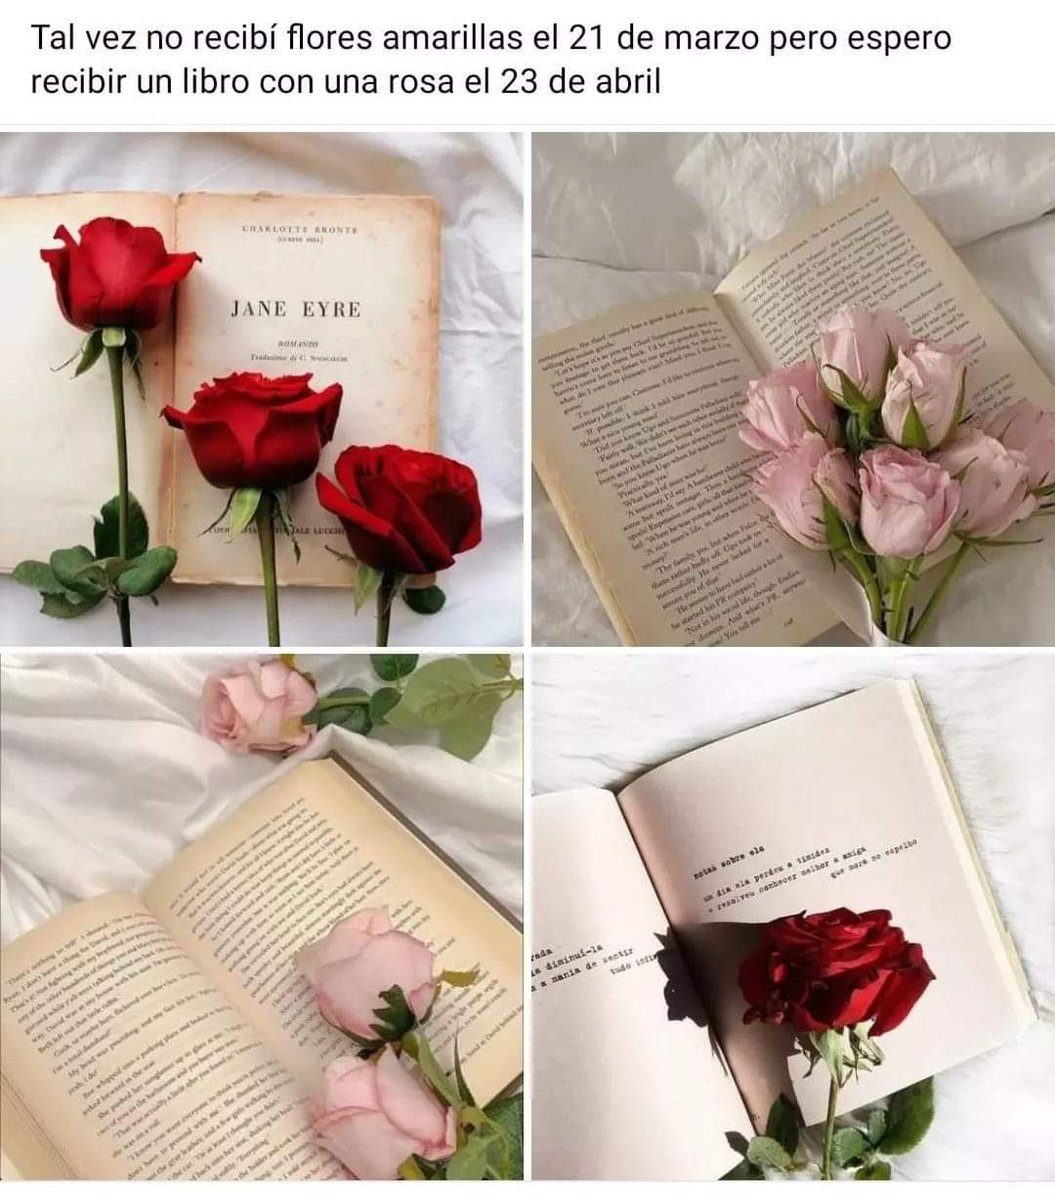 Si les gusta leer‼️📖 no olviden su libro y una rosa 🌹 este 23 de Abril‼️📖❣️💐🌹📖❣️💐📖❣️🌹
#23deabril
#floreriaguindashy #Floreríastoluca #floresadomicilio